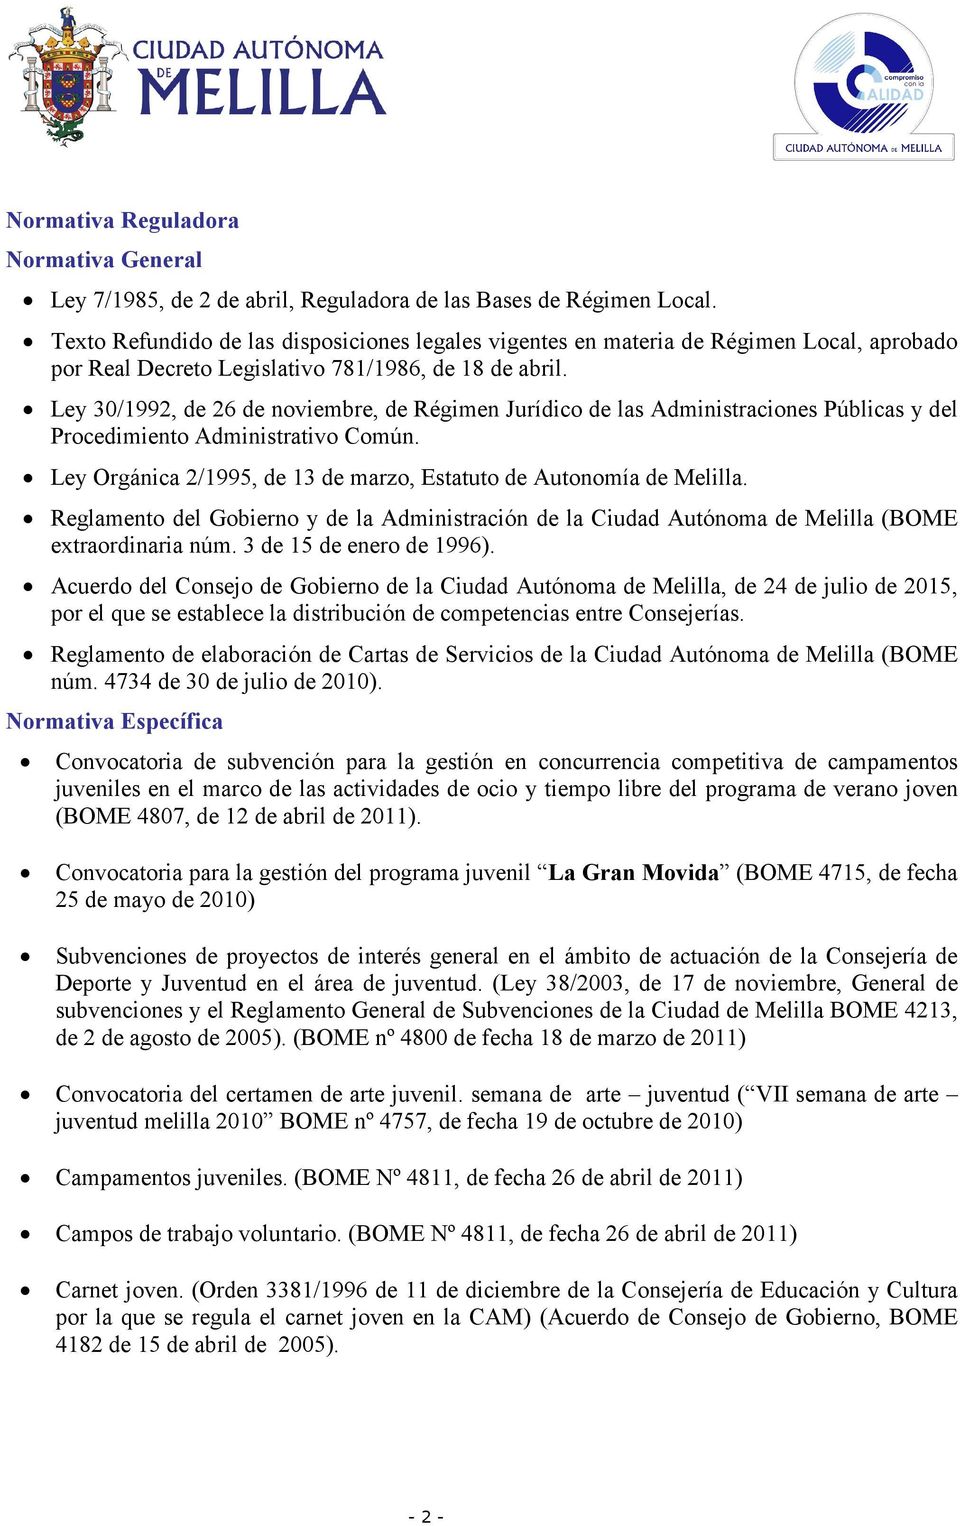 Ley 30/1992, de 26 de noviembre, de Régimen Jurídico de las Administraciones Públicas y del Procedimiento Administrativo Común. Ley Orgánica 2/1995, de 13 de marzo, Estatuto de Autonomía de Melilla.